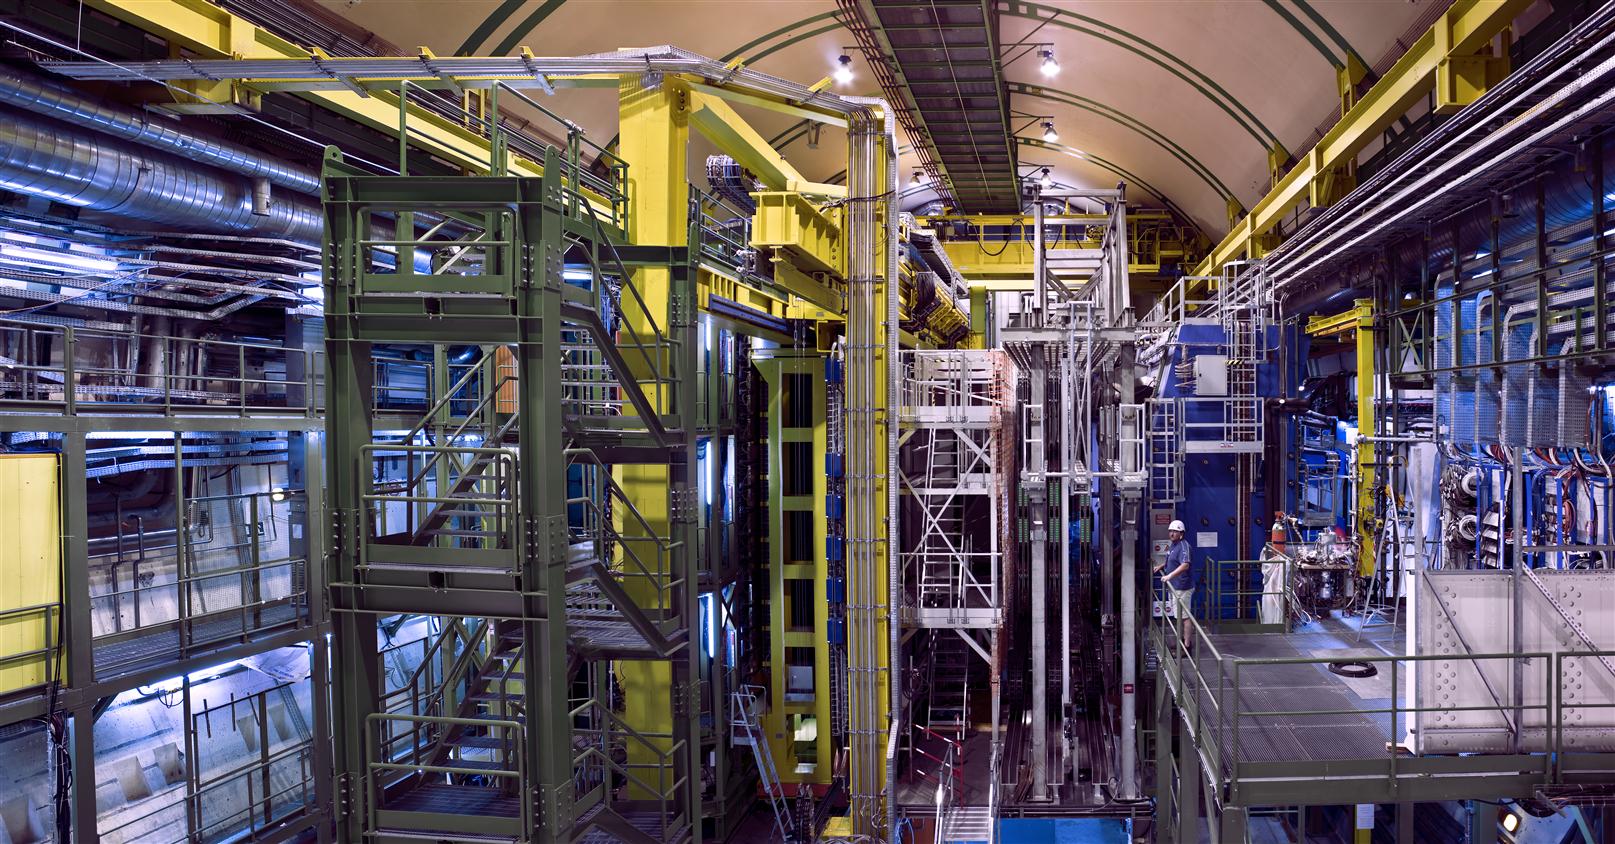 LHCb, l'un des détecteurs géants du Cern étudiant les collisions des faisceaux de protons du LHC. On y chasse les désintégrations rares de mésons contenant des quarks b, ou quarks bottom. Ces mésons sont une fenêtre potentielle sur une nouvelle physique, en particulier celle pouvant expliquer pourquoi la matière domine largement l'antimatière dans le cosmos observable. © Cern